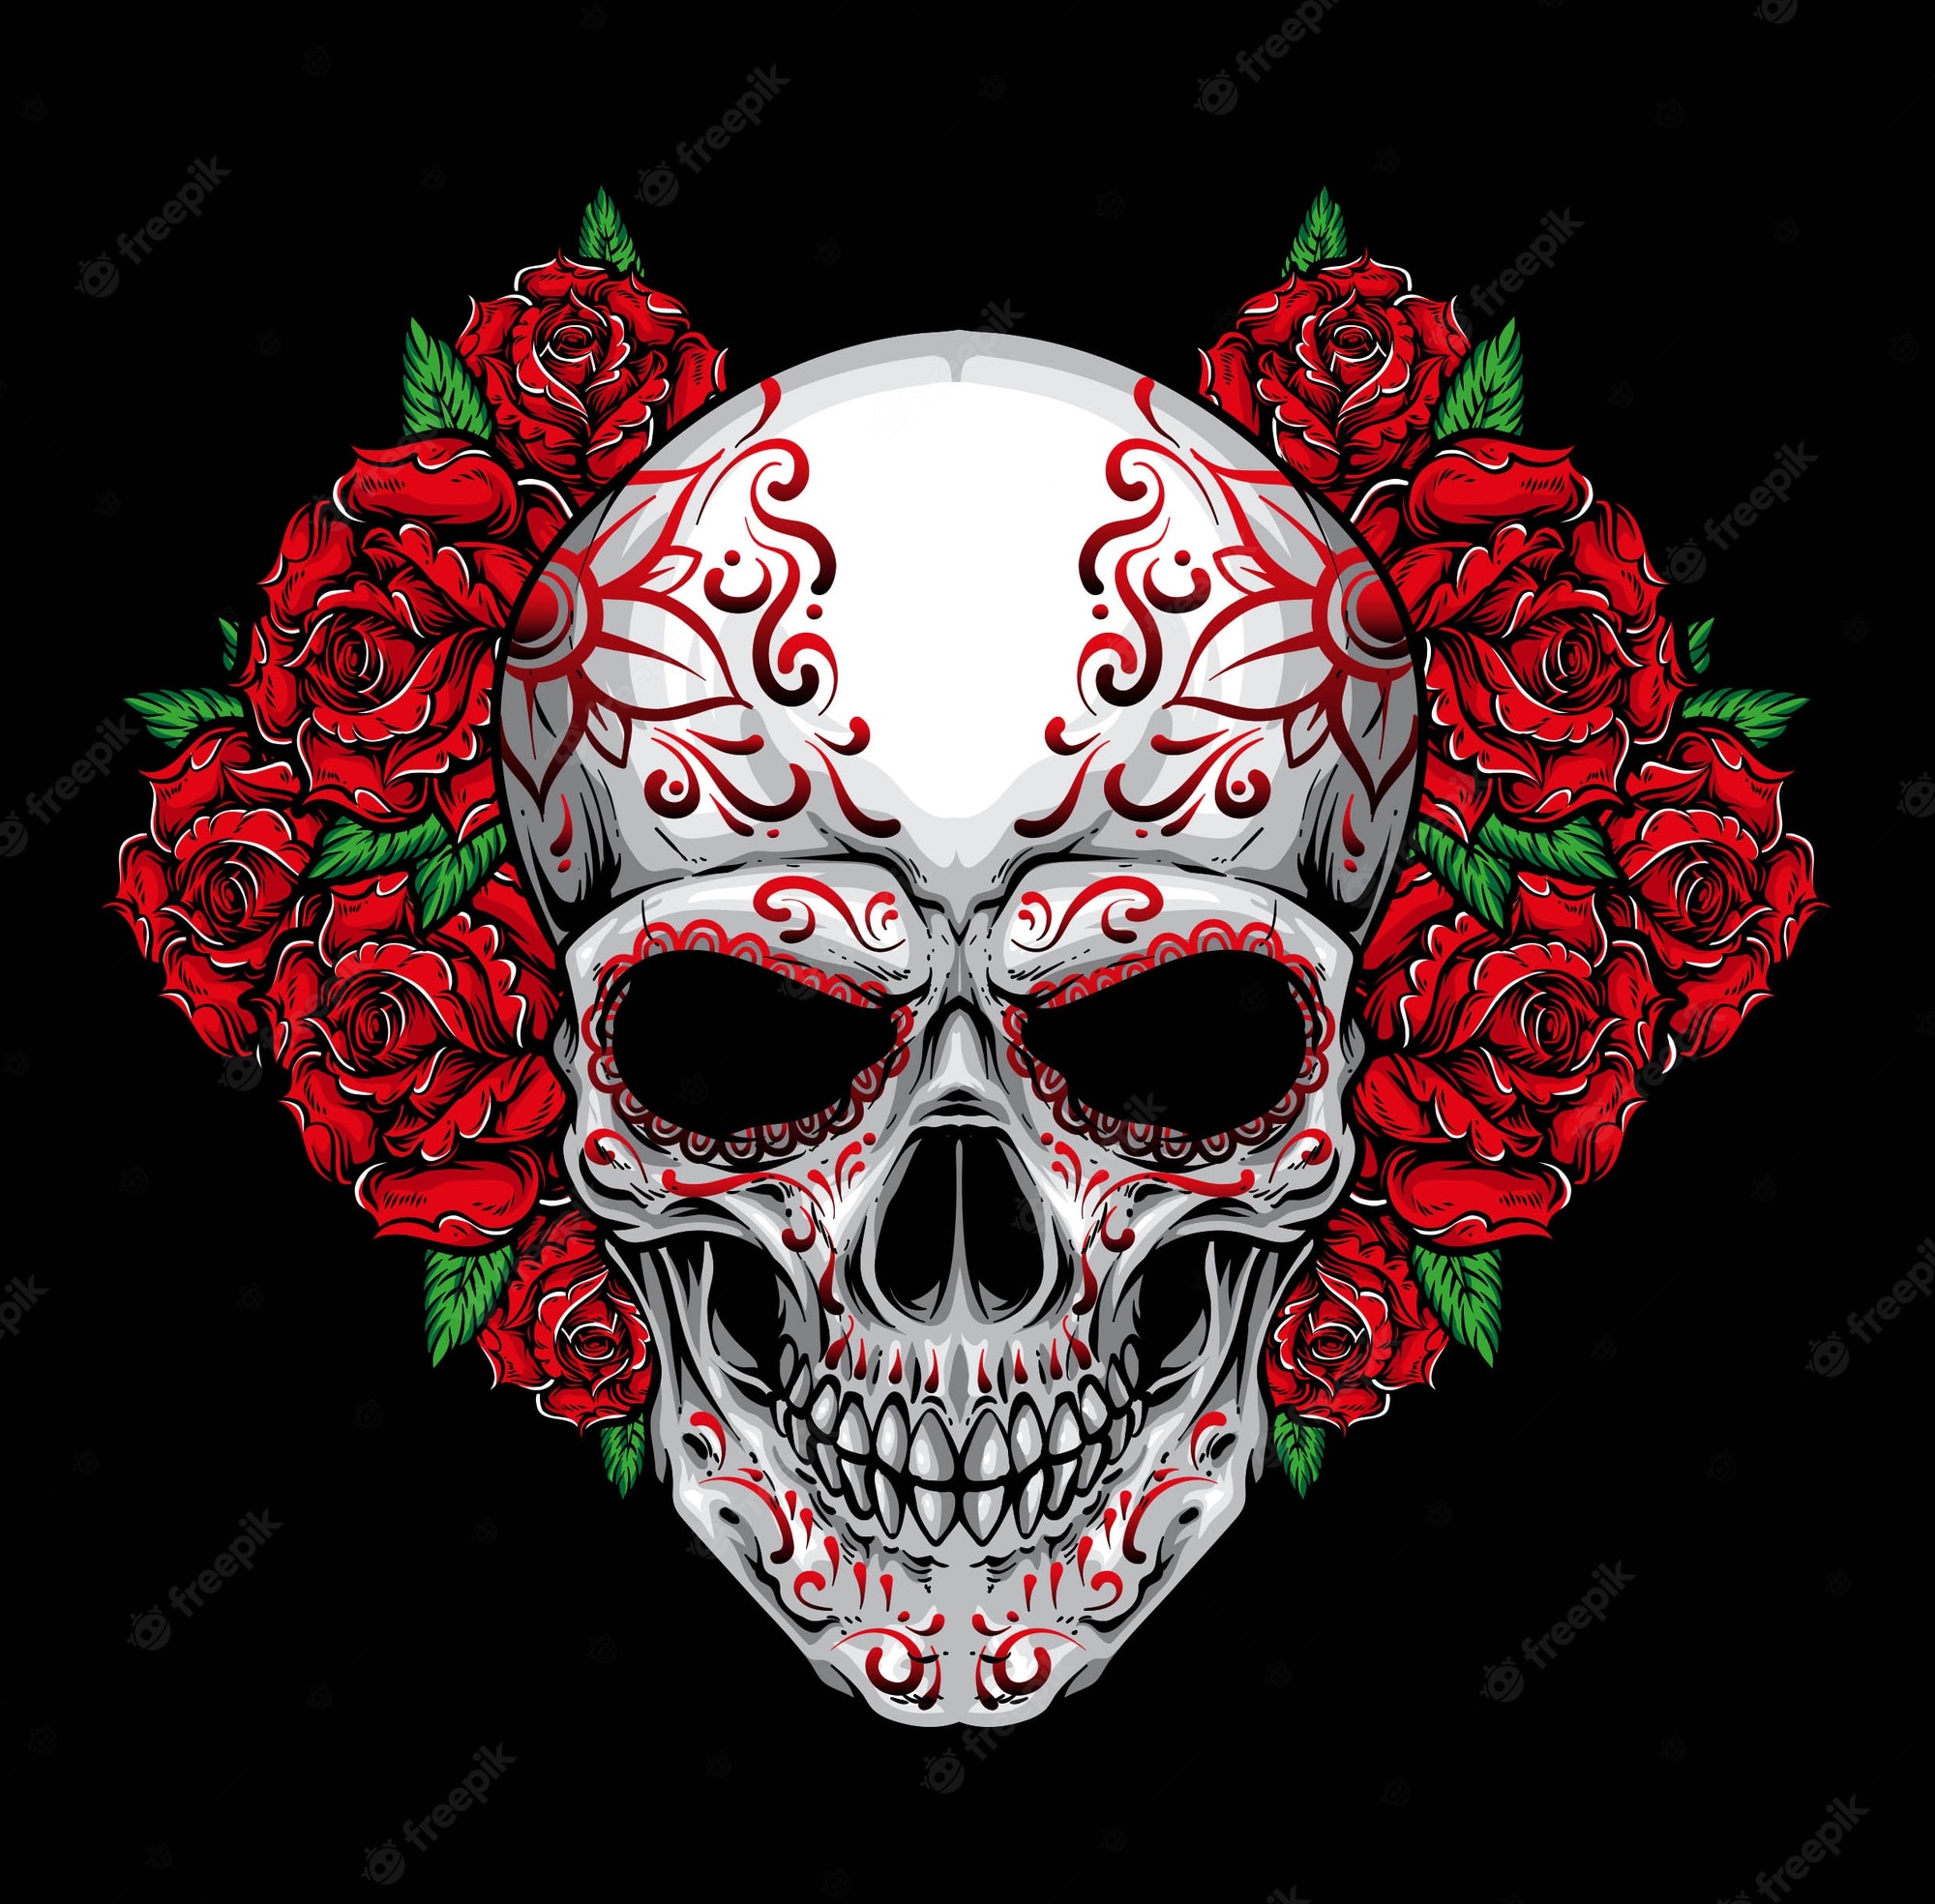 Feminine Skull And Roses Wallpapers